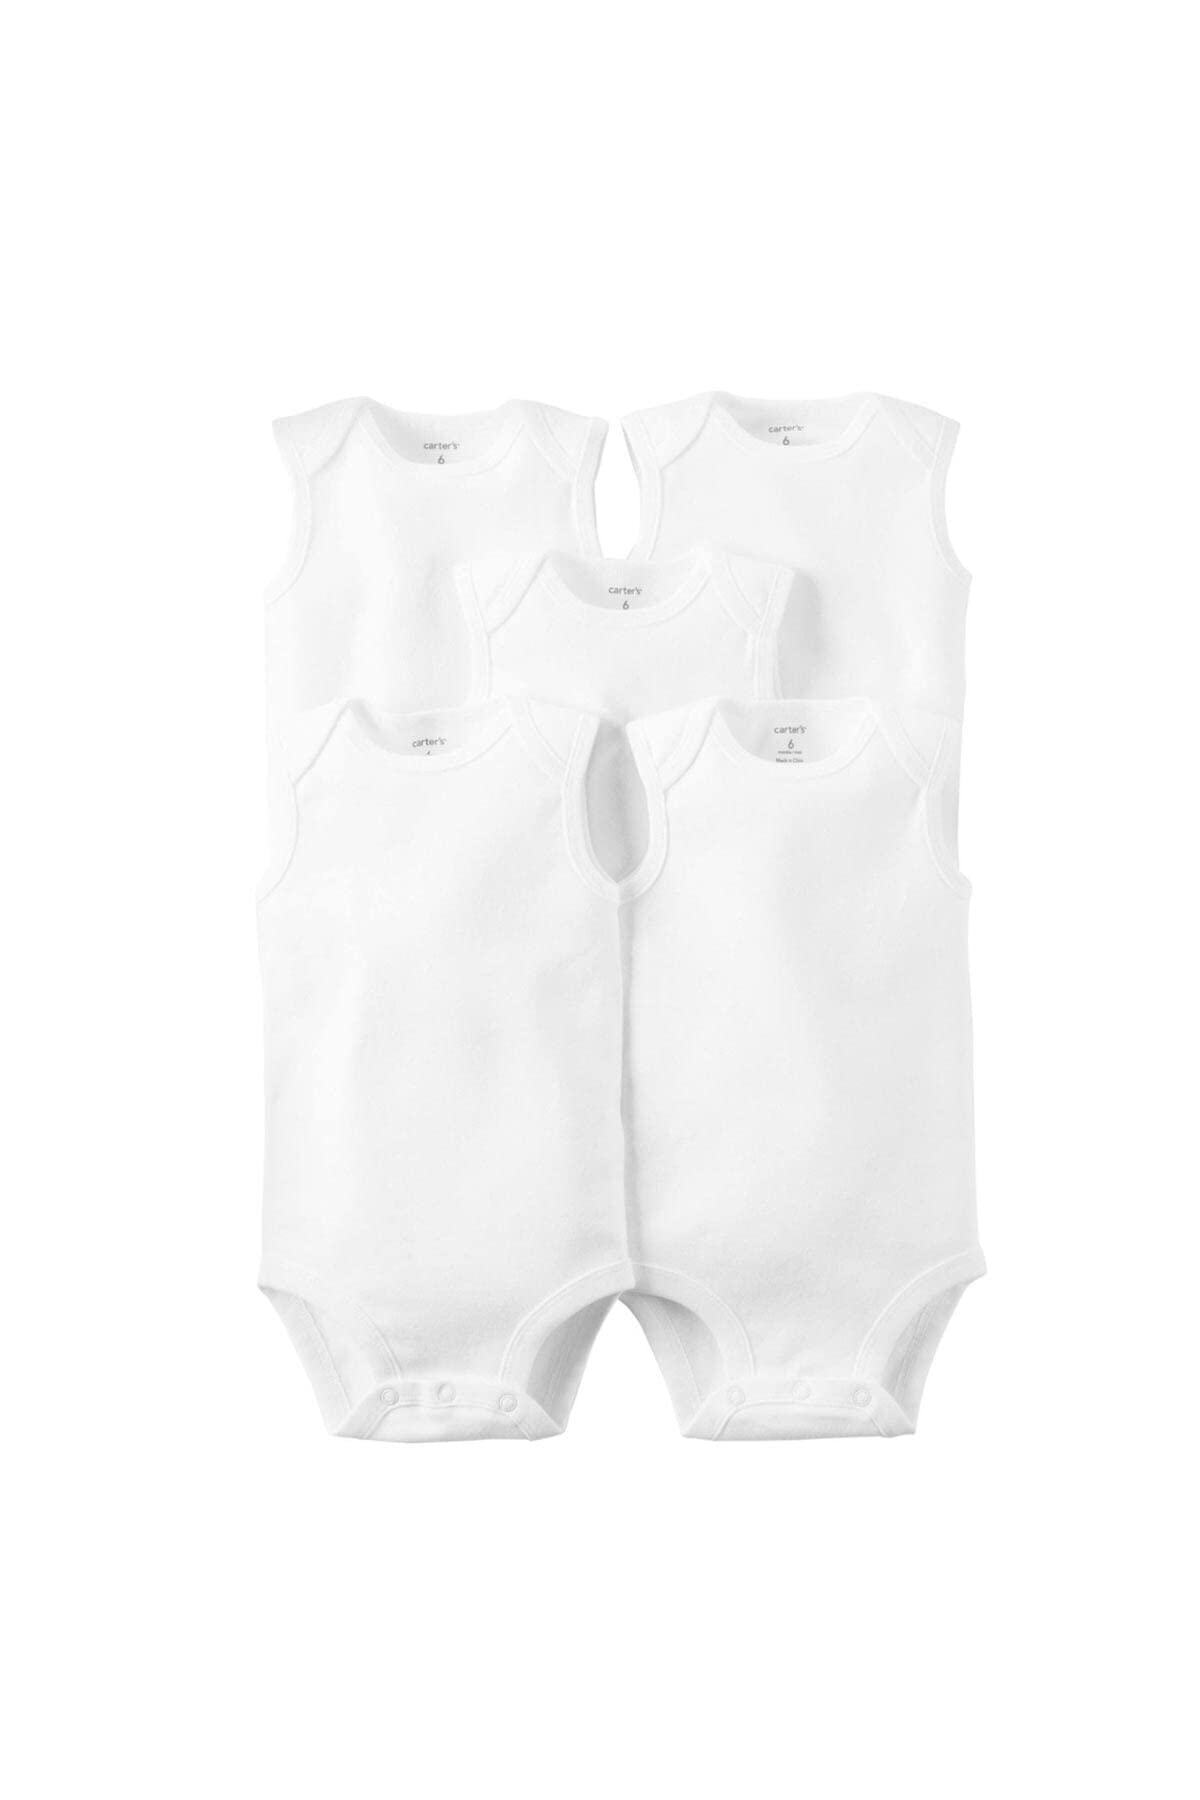 Carter's Unisex Baby 5-Pack Sleeveless Bodysuits